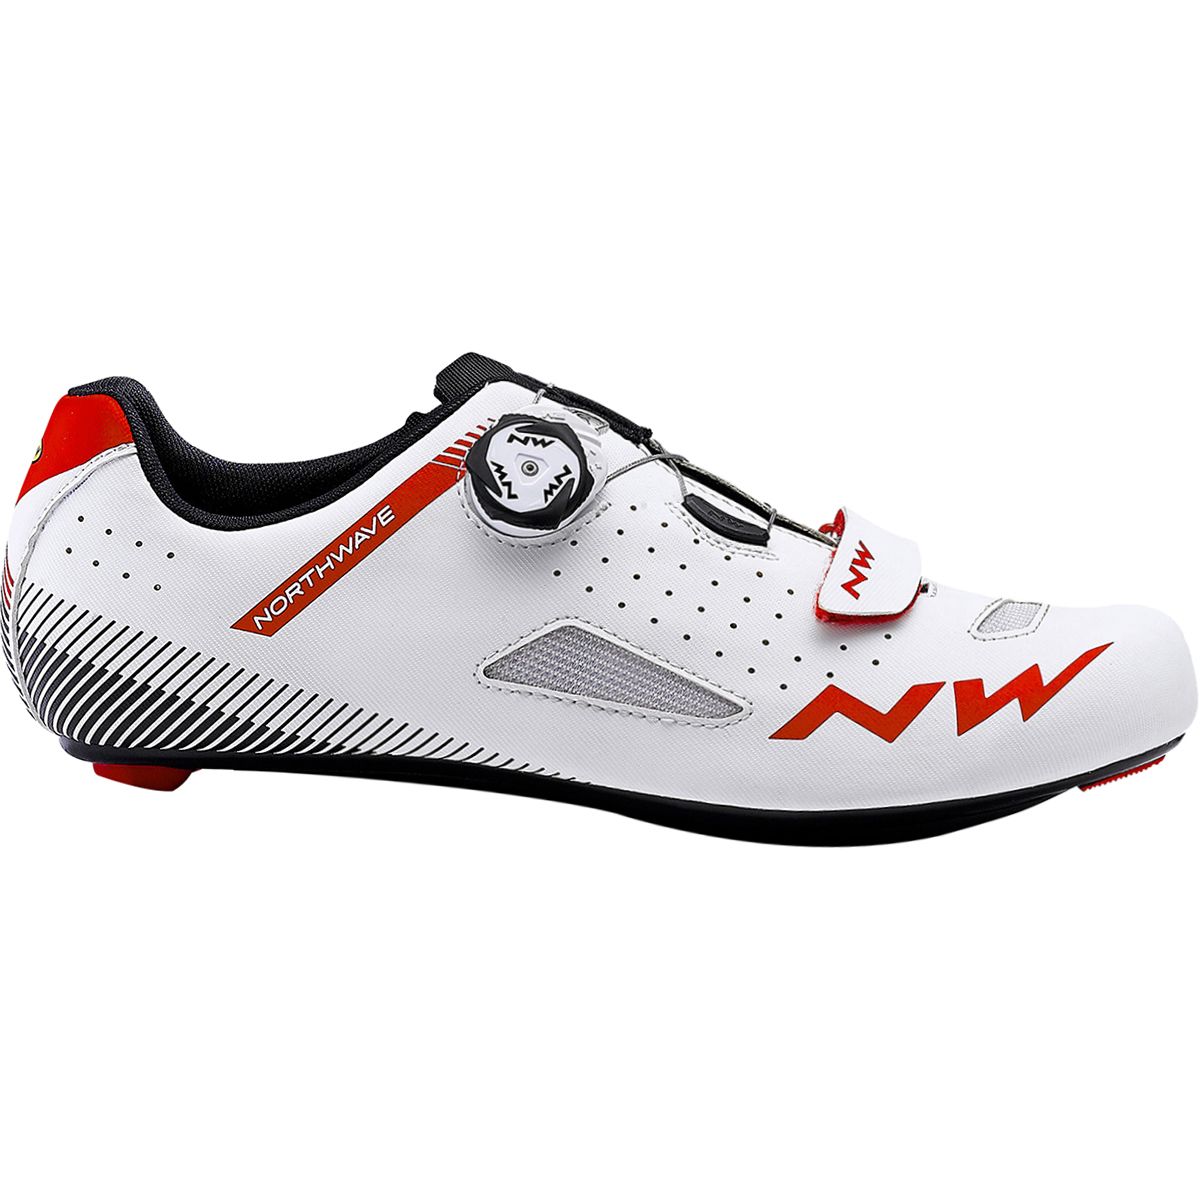 Northwave Core Plus Cycling Shoe - Men's